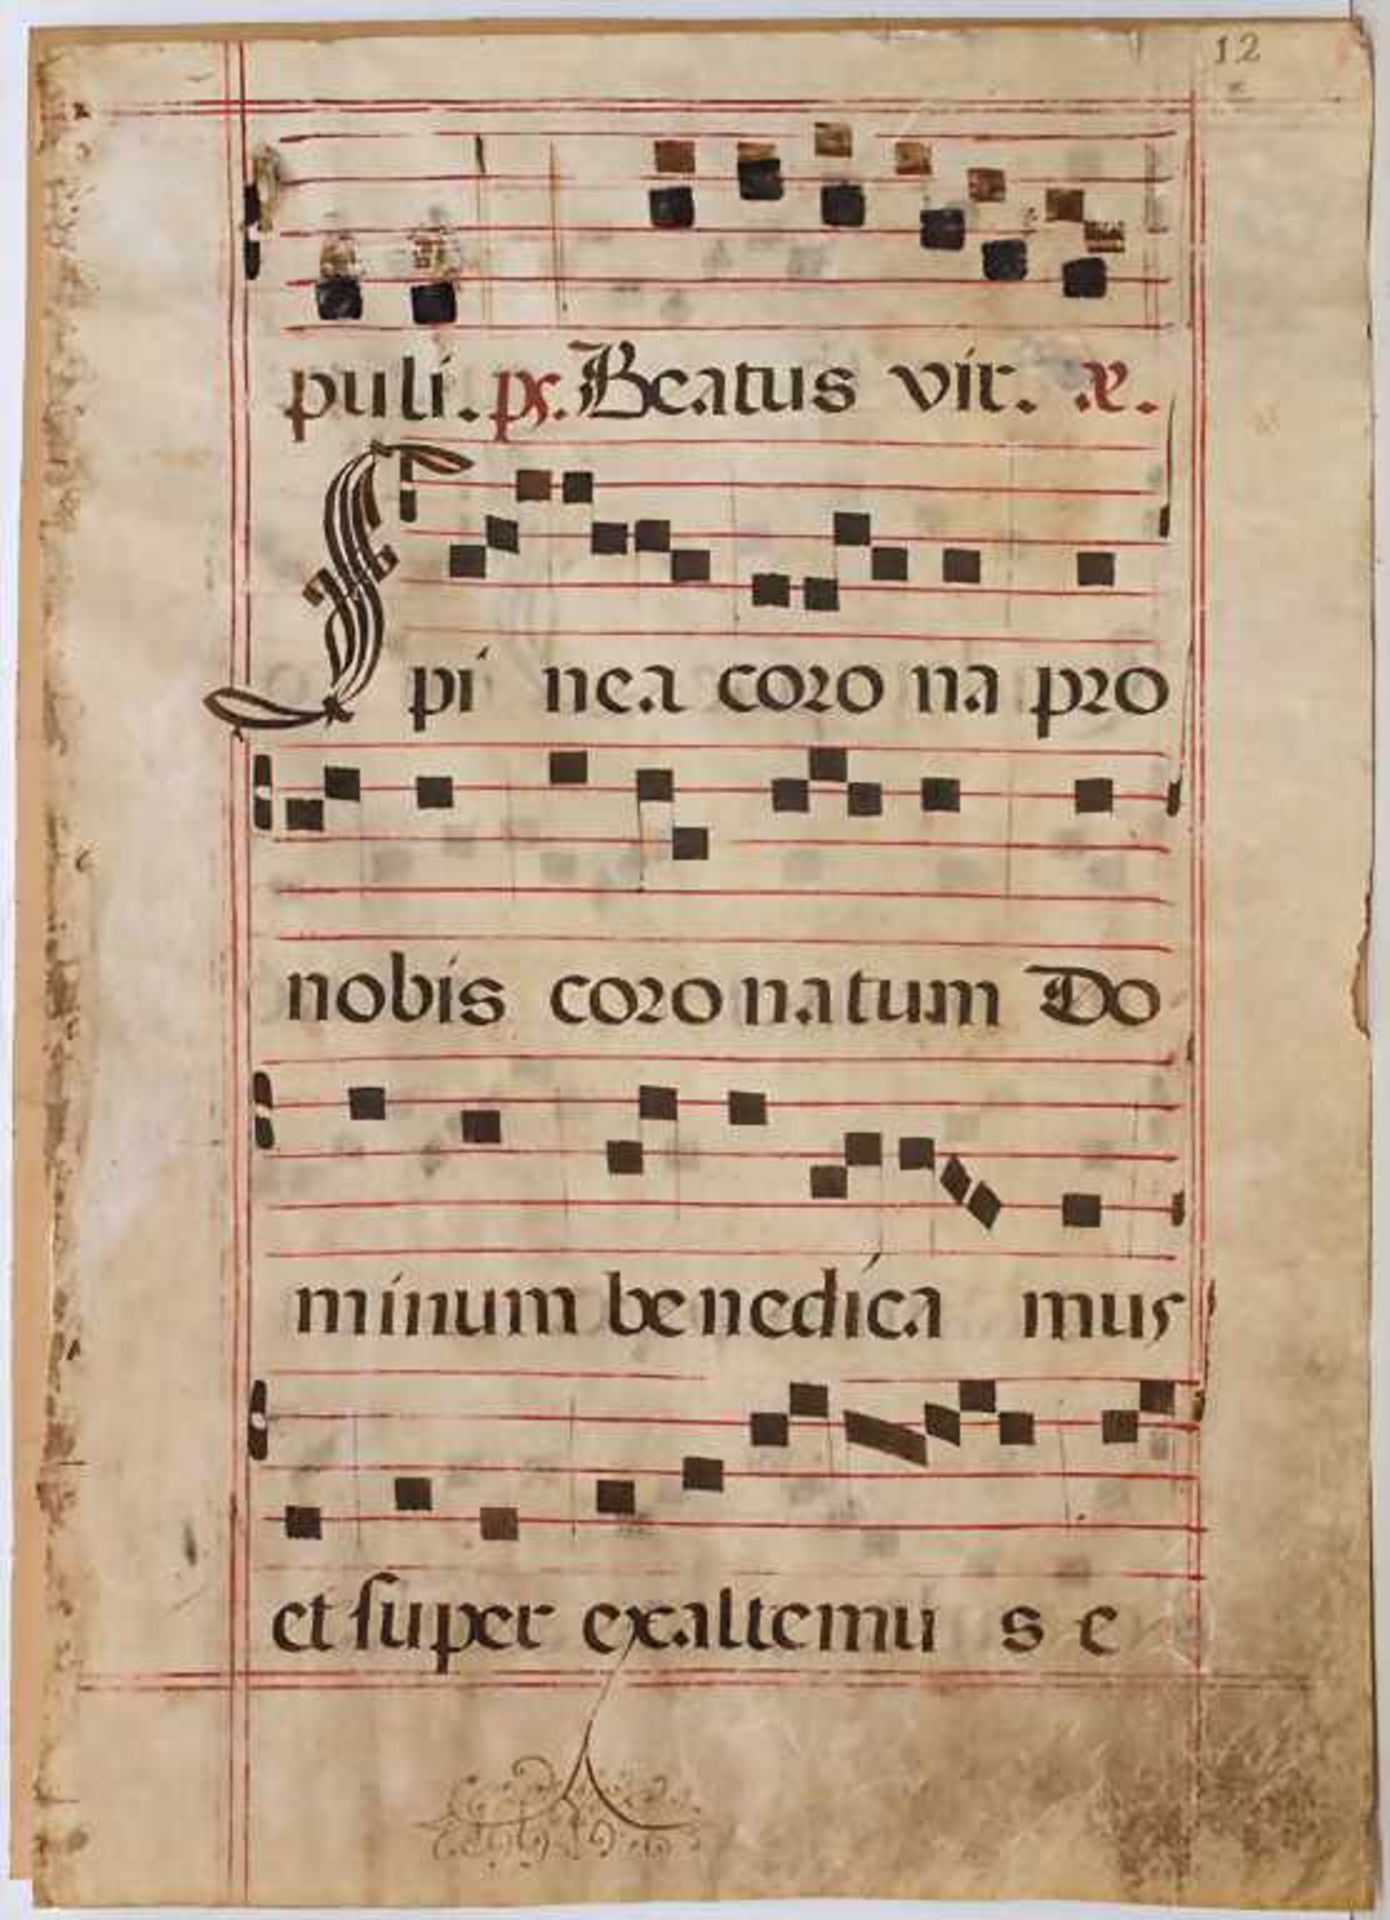 Missale-Blatt, 15. JhMaterial: Pergament bemalt, hinter Glas gerahmt.Herkunft: aus Besitz der